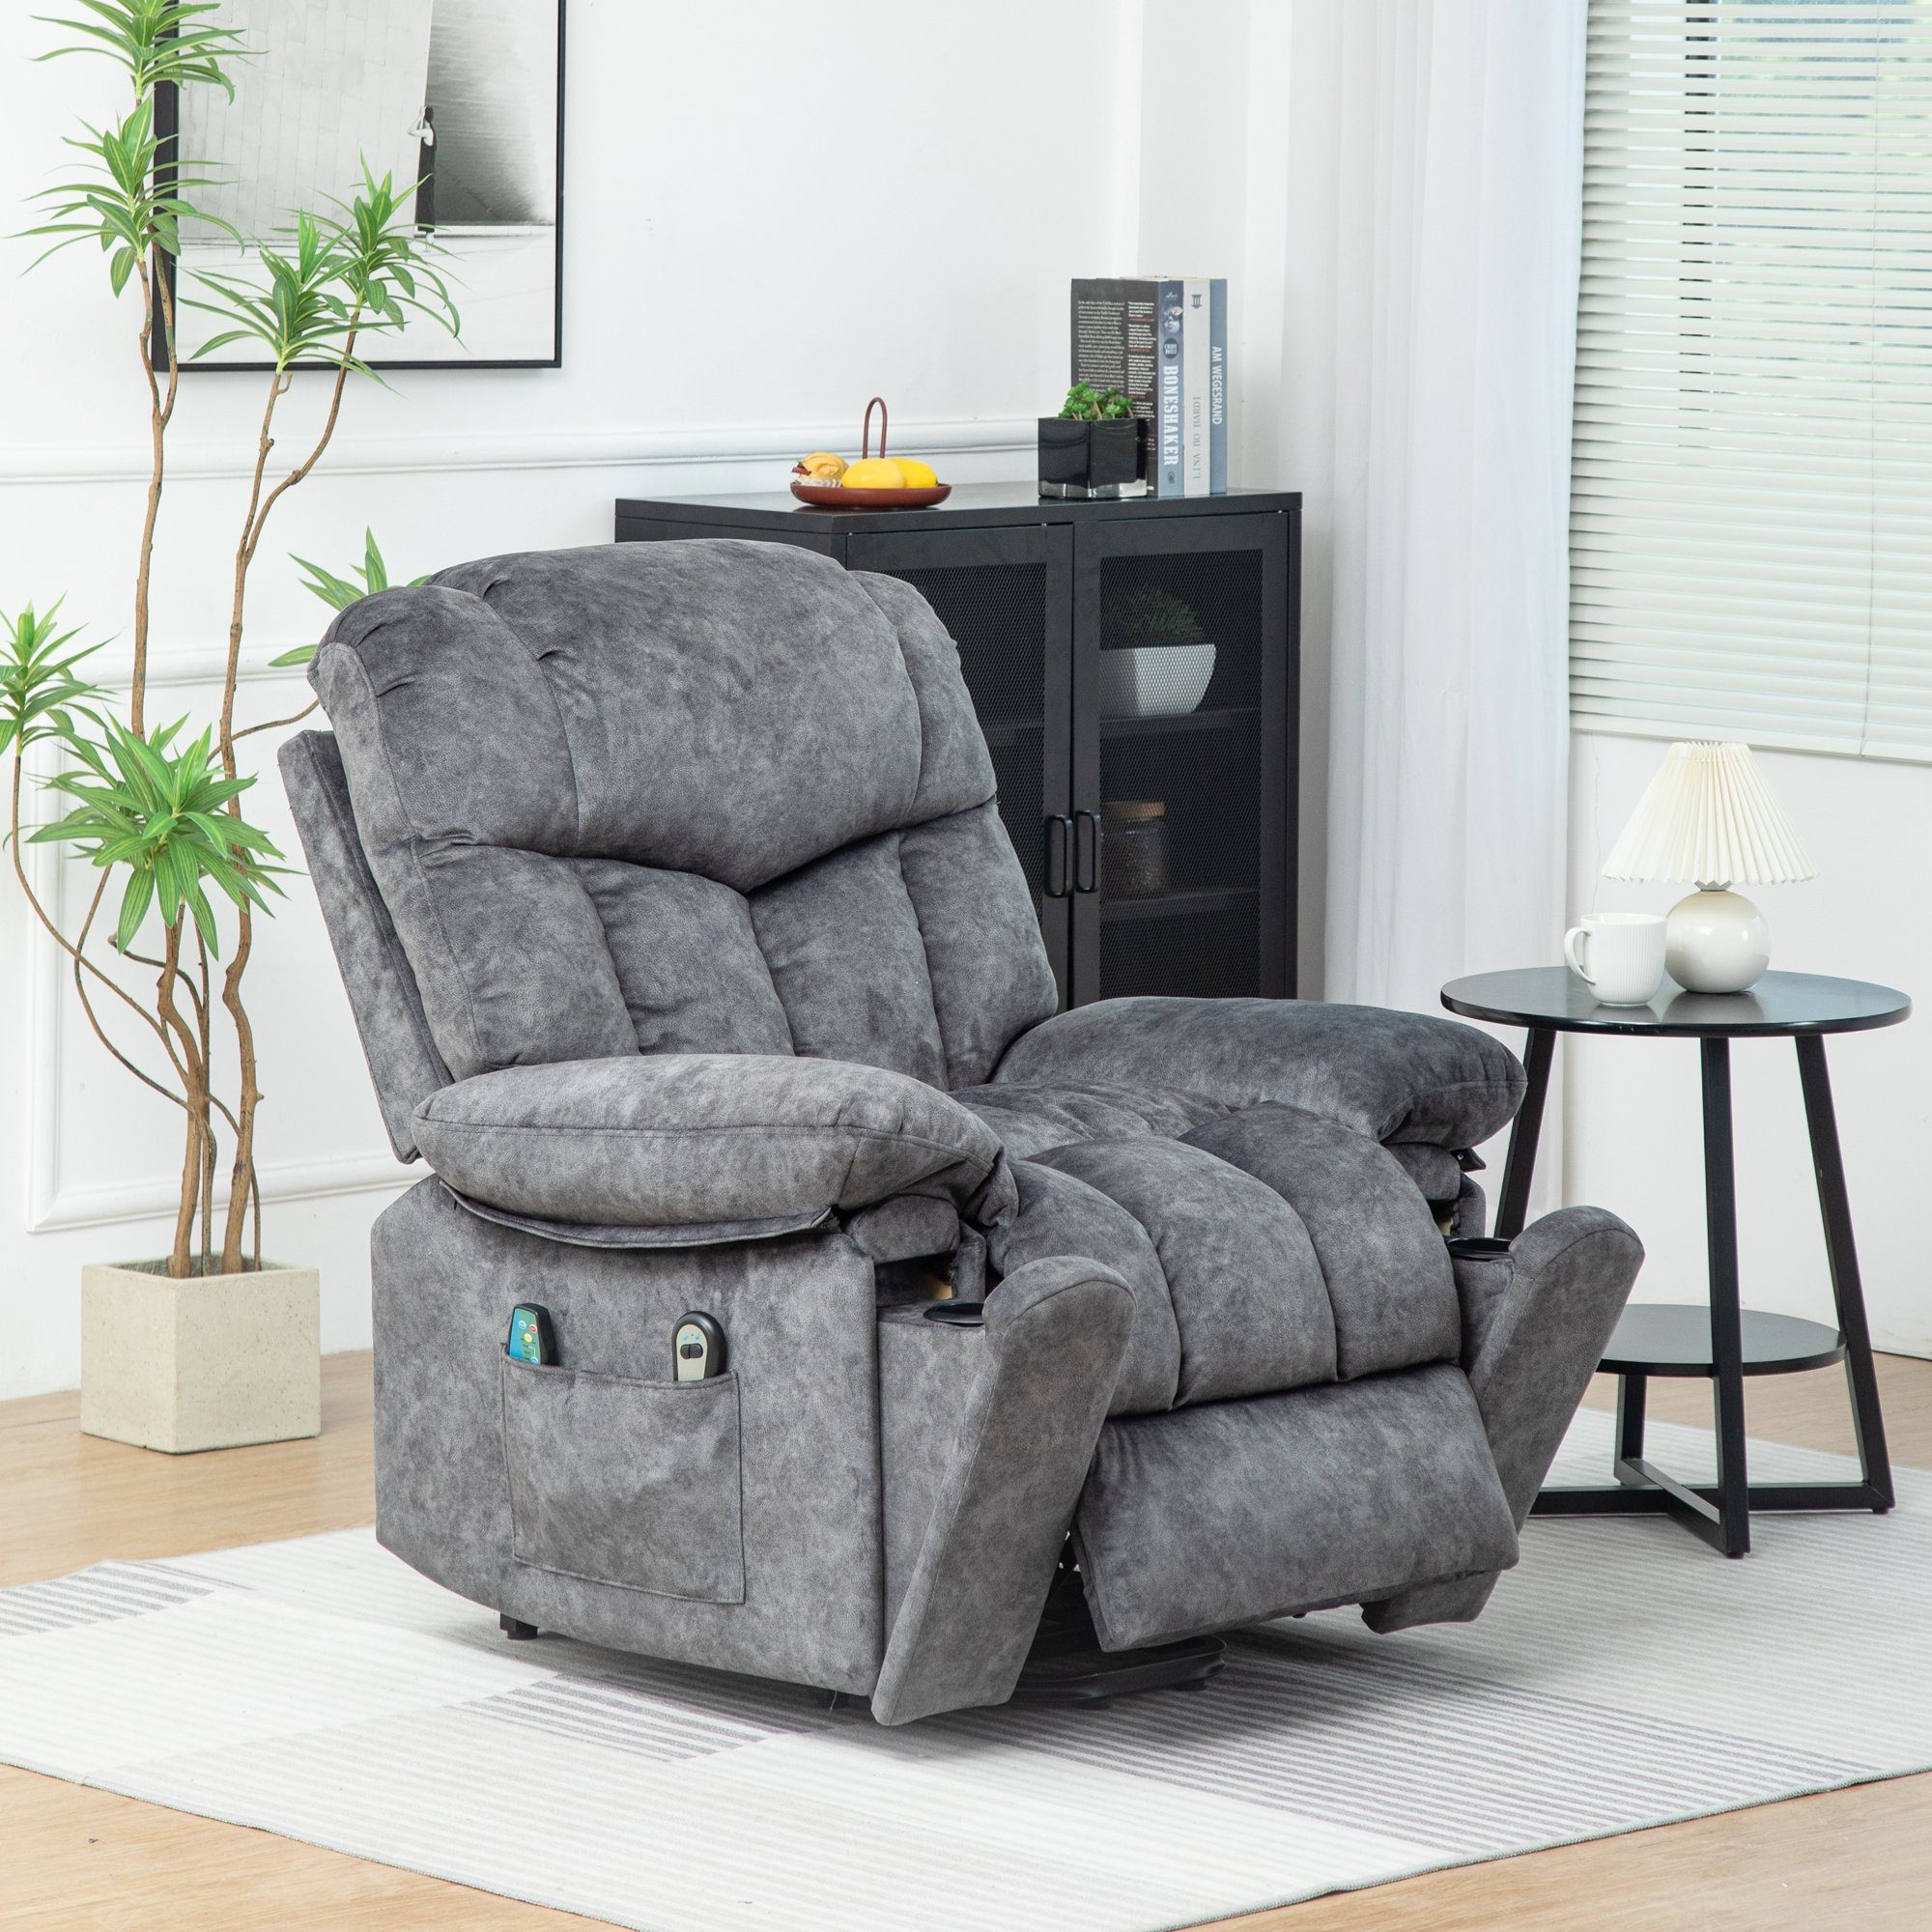 【Öffnung】 Merax TV-Sessel mit Vibraiton, Relaxsessel Grau und Wärme relaxfunktion, mit Massagesessel Aufstehhilfe Fernsehsessel Elektrisch Liegefunktion, und